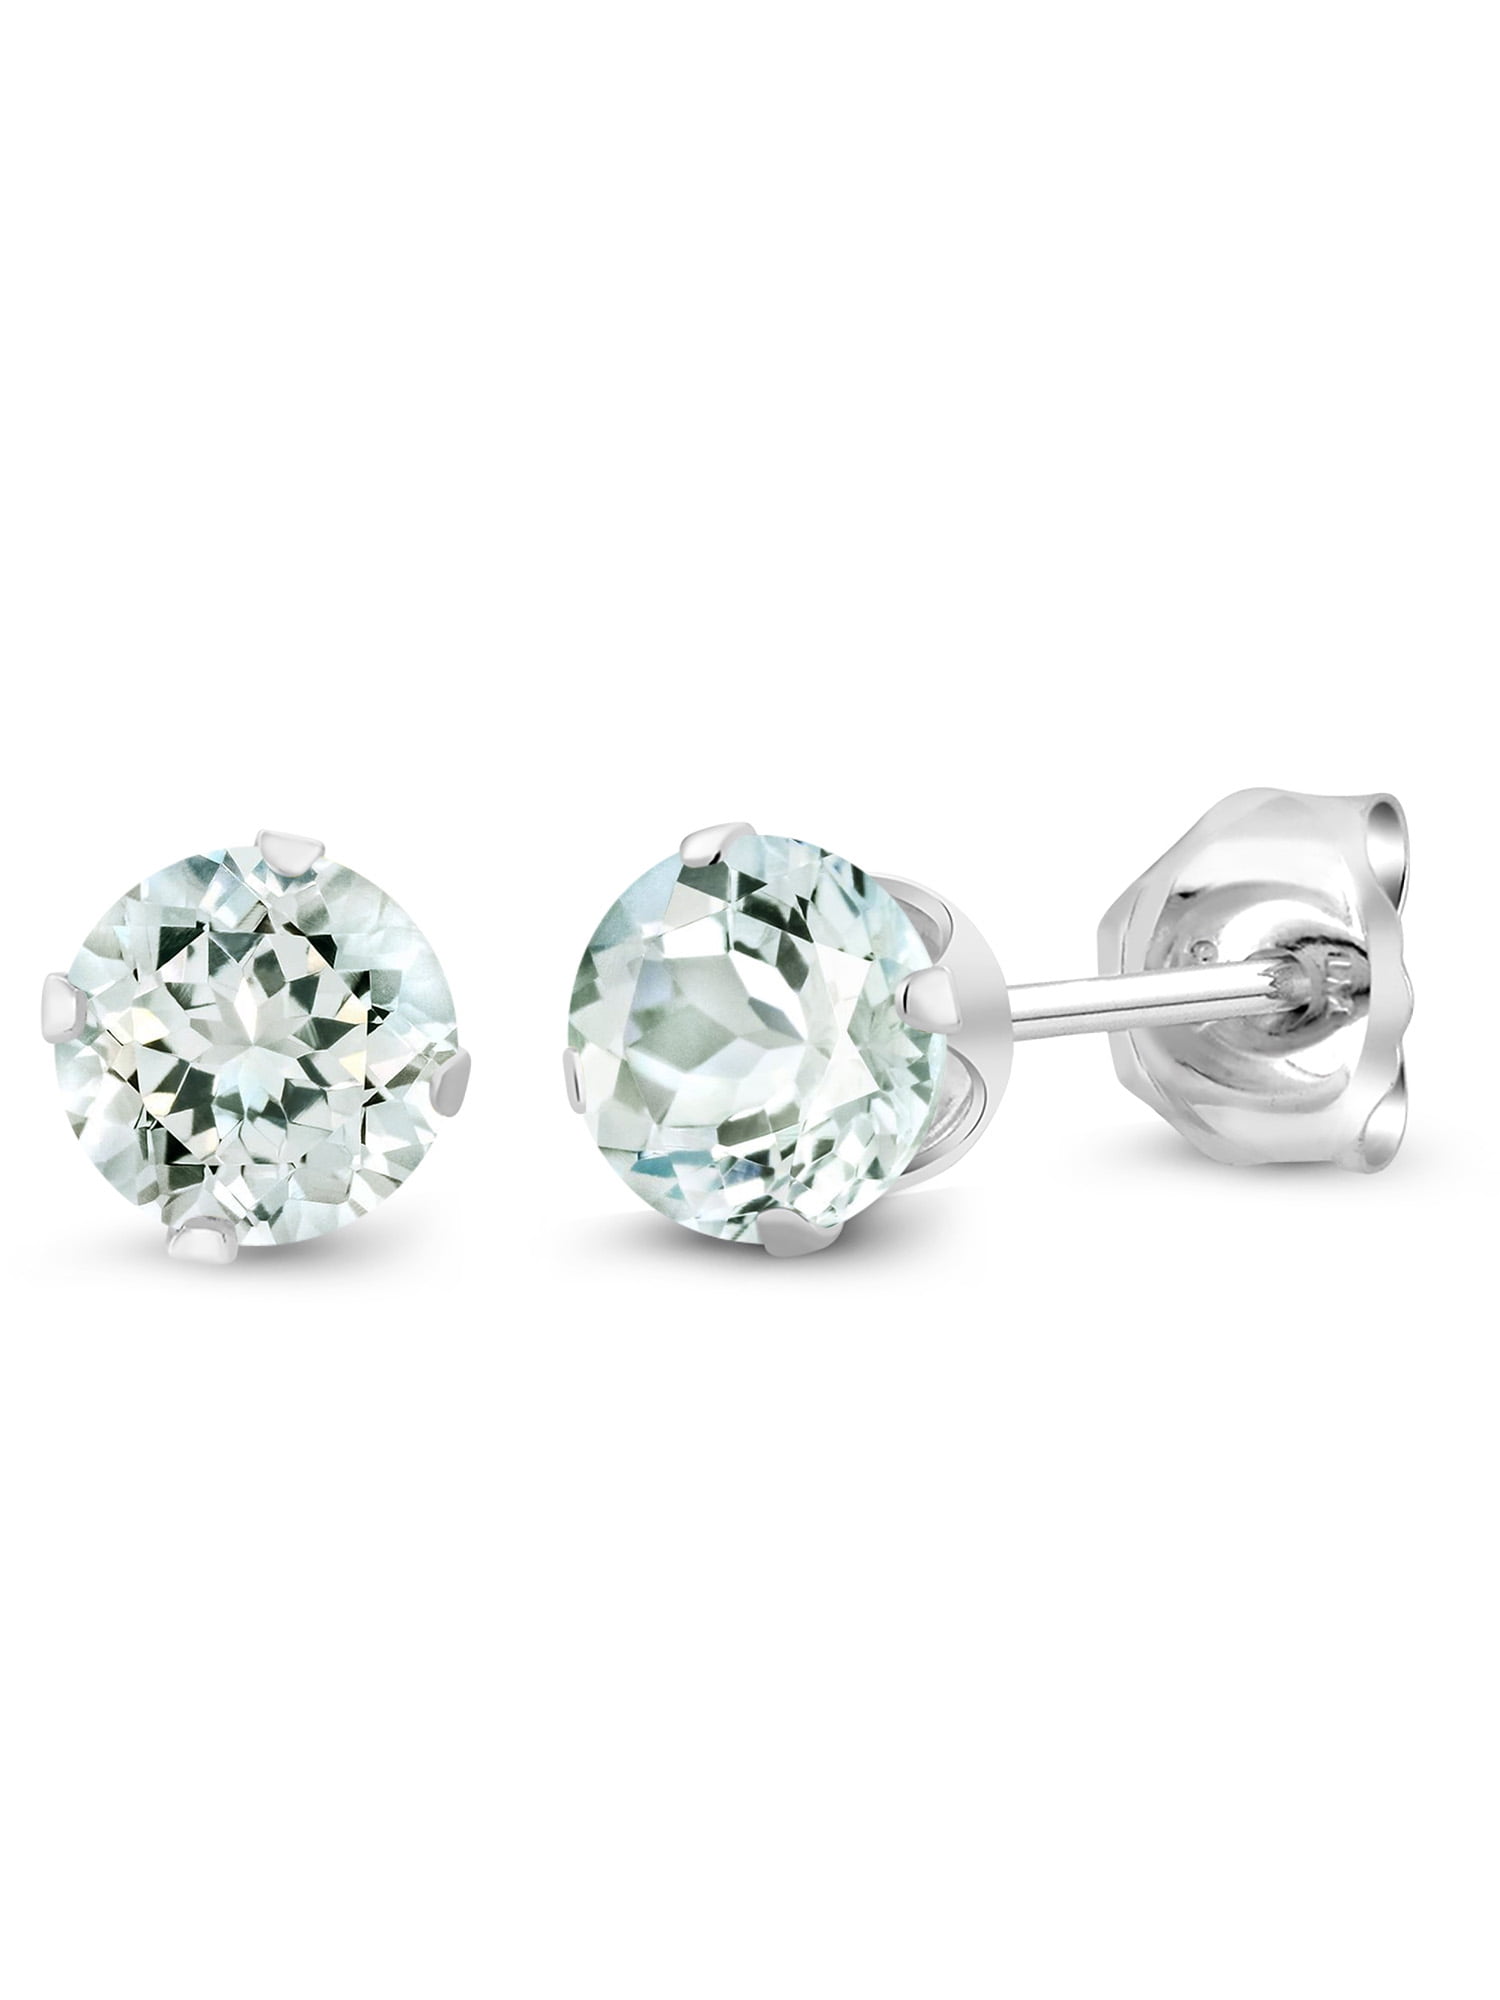 White Fire Opal Zircon Silver Women Jewelry Gemstone Stud Earrings 1 1/4" OH3916